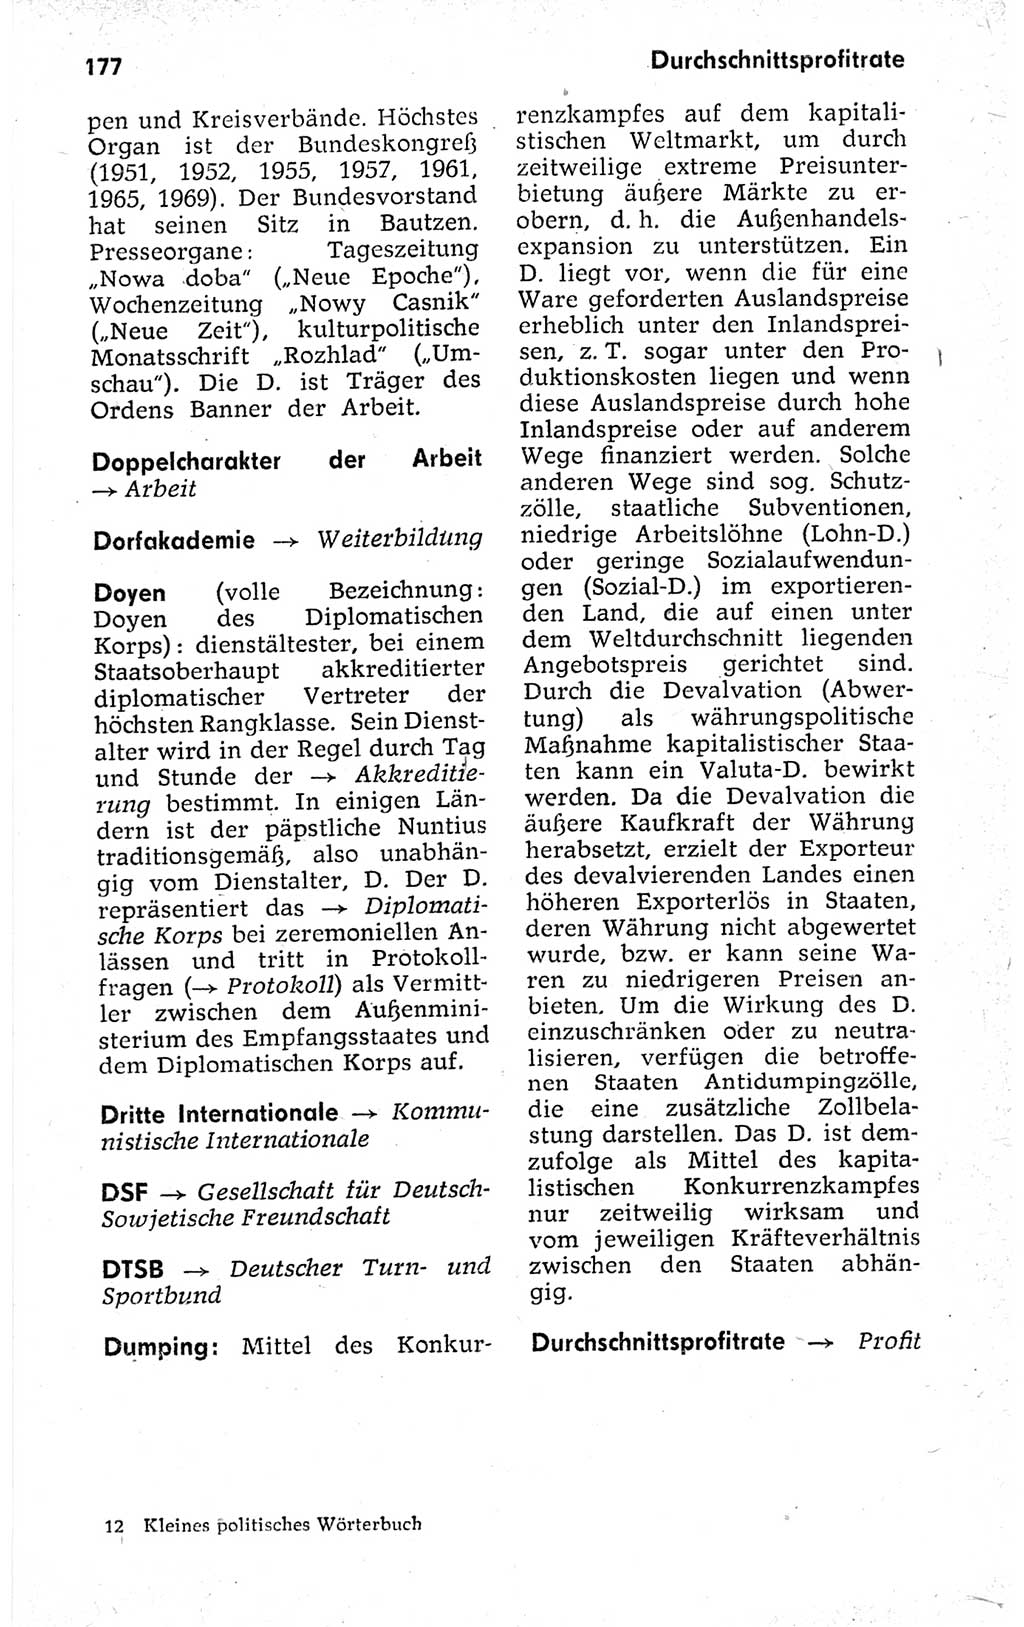 Kleines politisches Wörterbuch [Deutsche Demokratische Republik (DDR)] 1973, Seite 177 (Kl. pol. Wb. DDR 1973, S. 177)